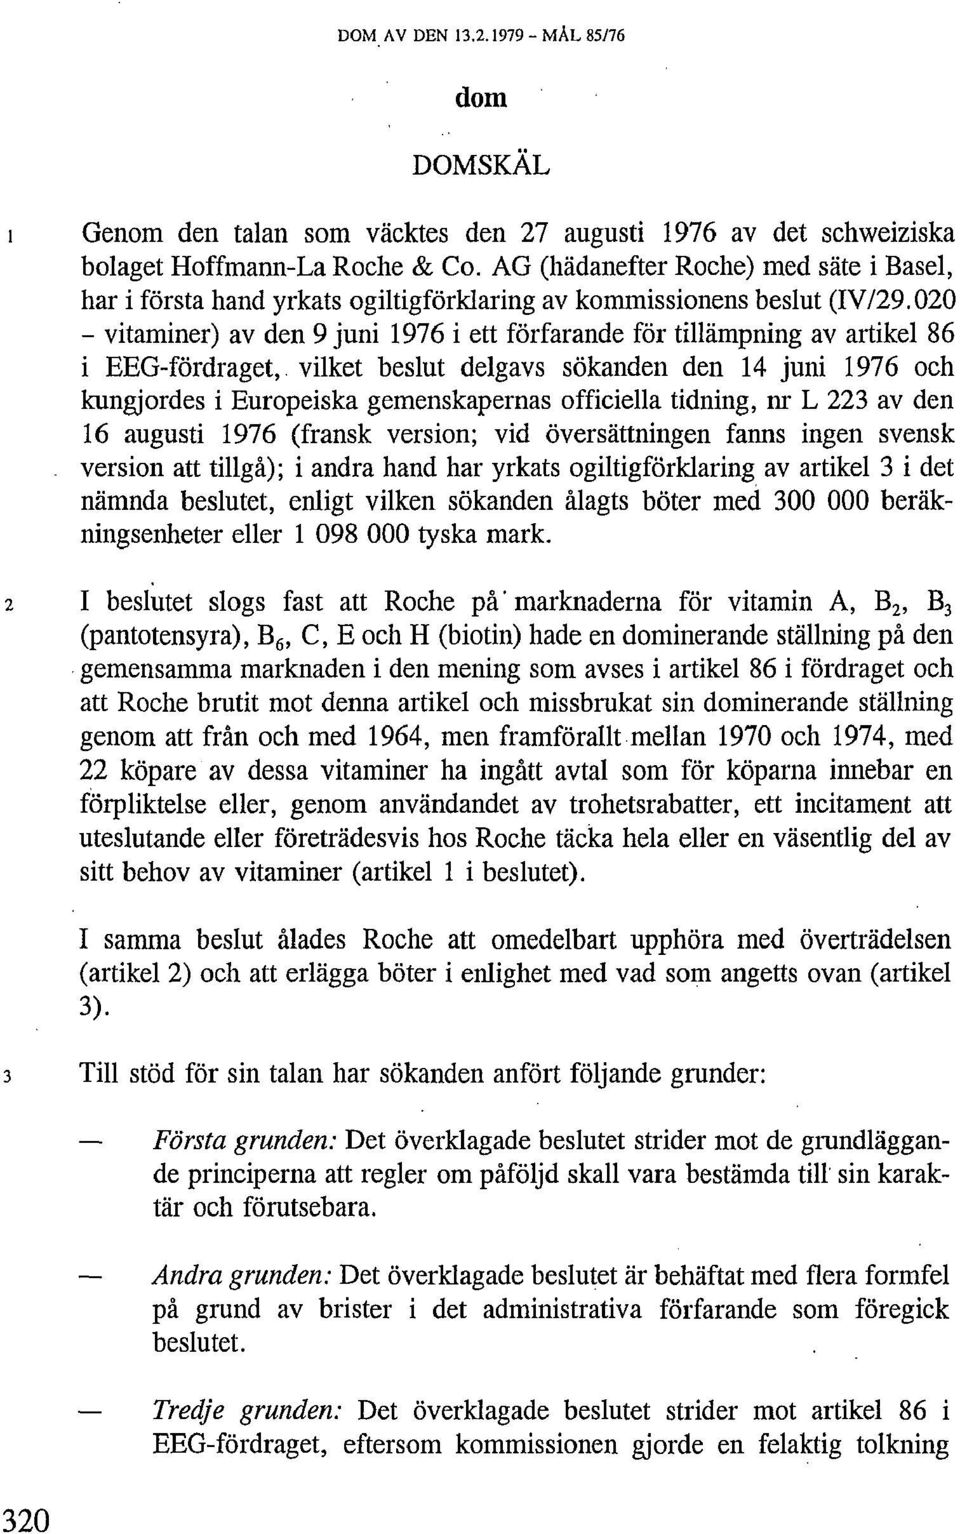 020 vitaminer) av den 9 juni 1976 i ett förfarande för tillämpning av artikel 86 i EEG-fördraget, vilket beslut delgavs sökanden den 14 juni 1976 och kungjordes i Europeiska gemenskapernas officiella